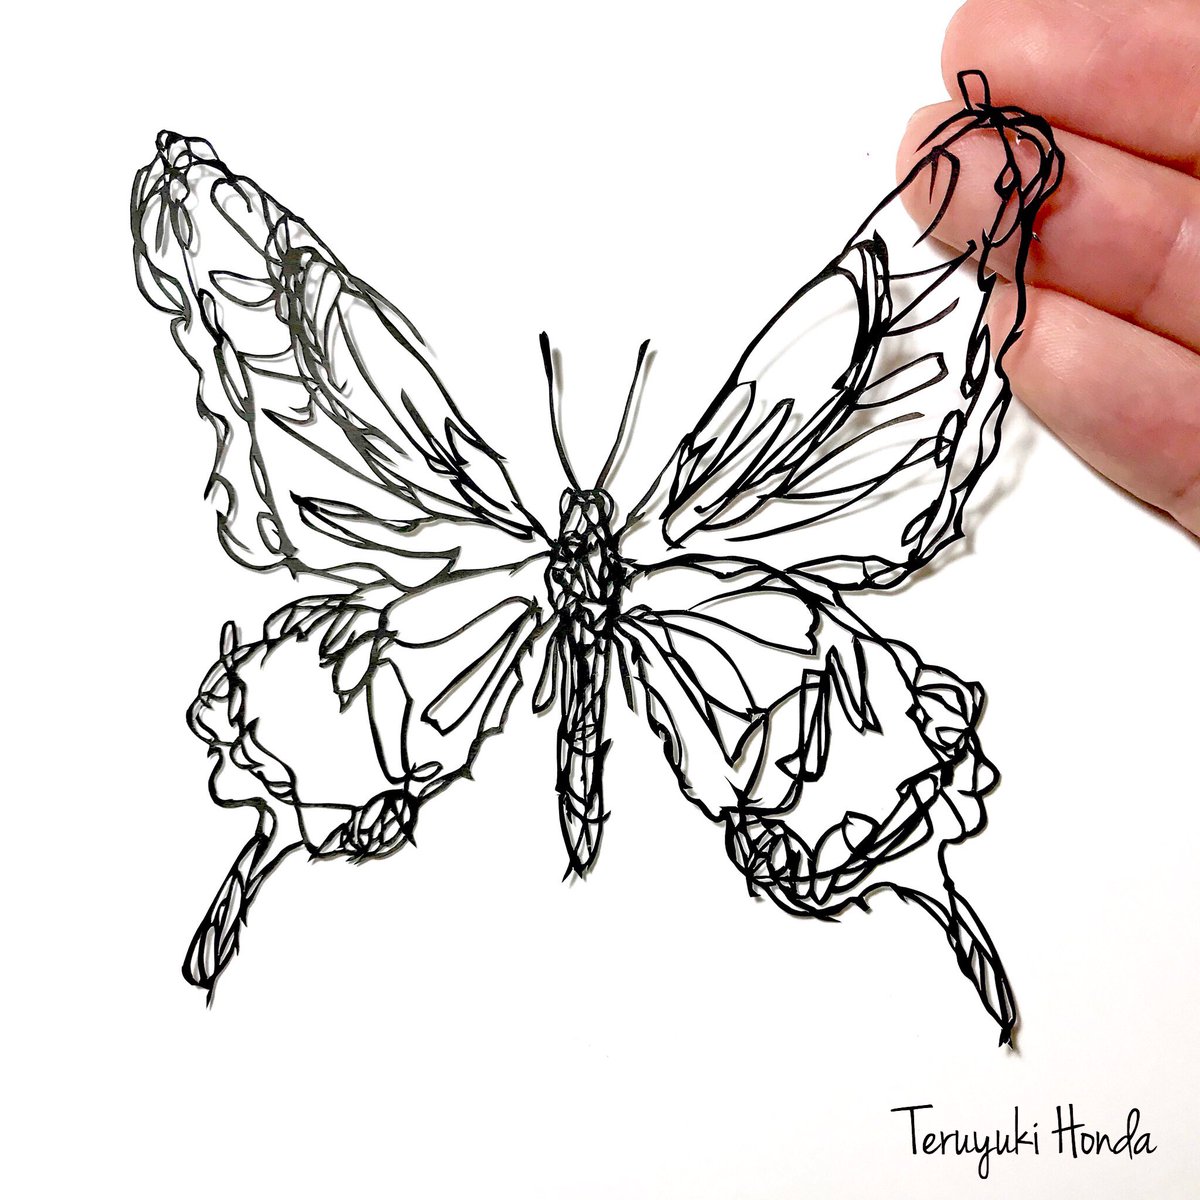 切り絵作家 Teruyuki Honda ミニ自在展弐 アゲハチョウ亜科 いわゆるアゲハチョウの切り絵 蝶は本当に難しい 図案 この一年でも作風が少しづつ変化しています 自分が気づいていることから 気づいていないことまで その時々の変化を楽しみながら